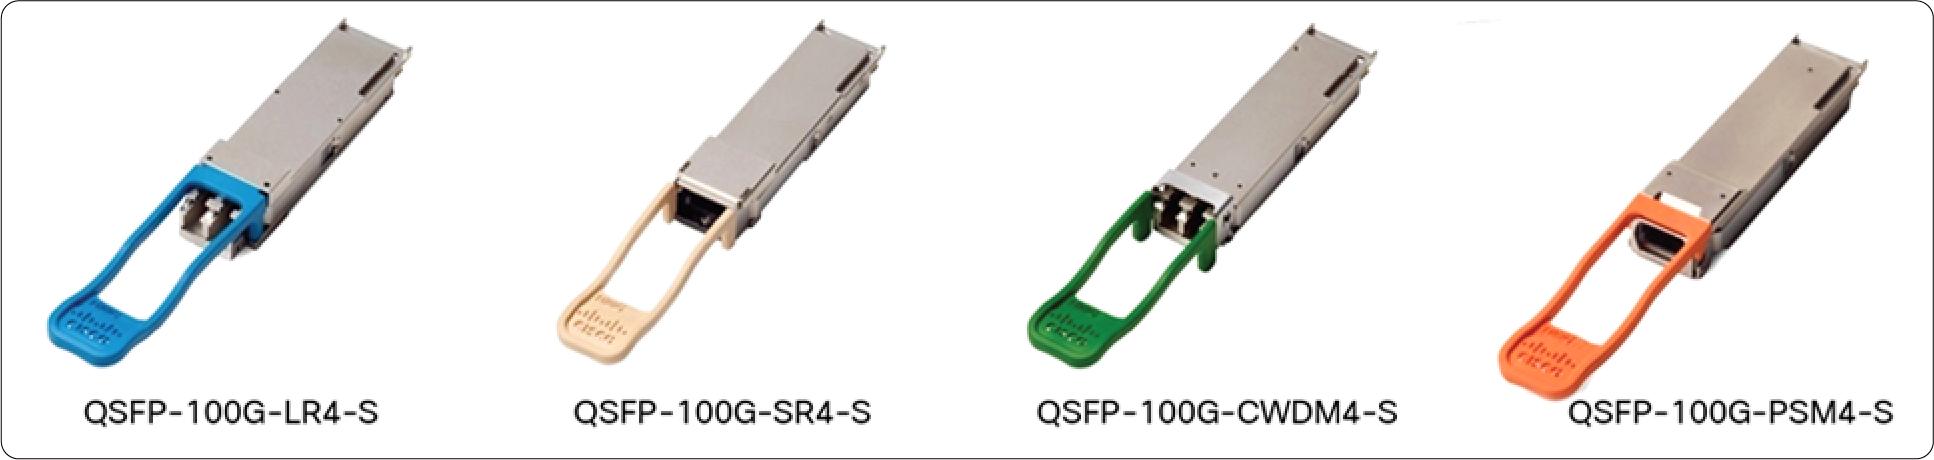 QSFP-100G-AOC25M Cisco 100 Gigabit Modules - Cisco 100GBASE QSFP Modules - 2